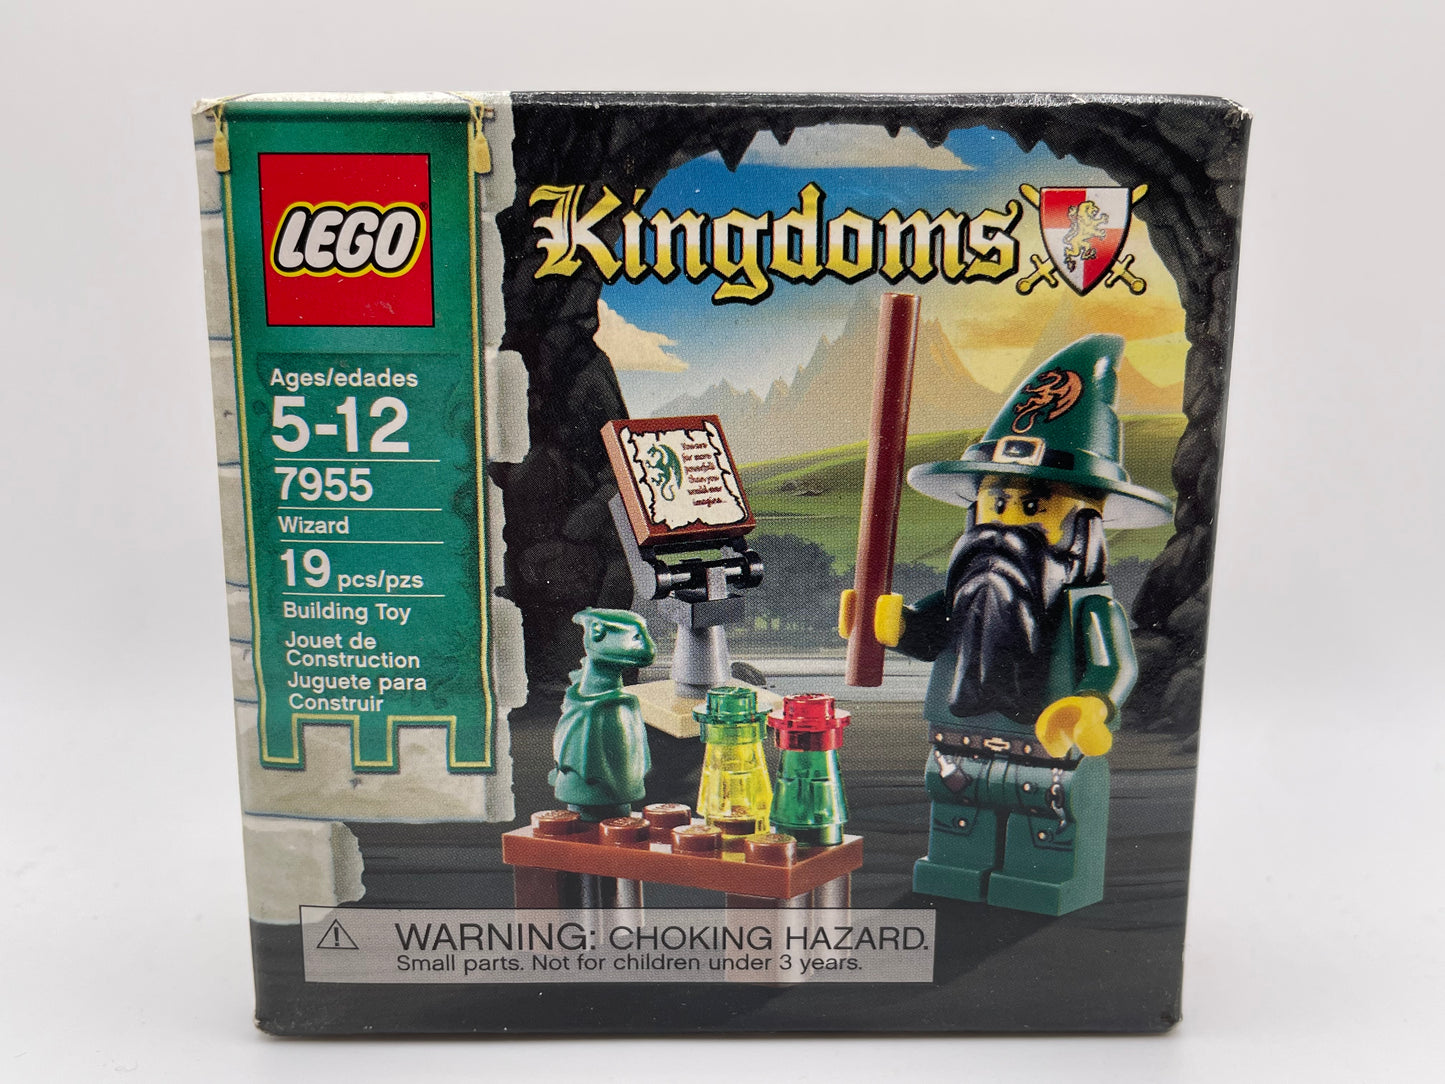 Lego Kingdoms 7955 Wizard MISB